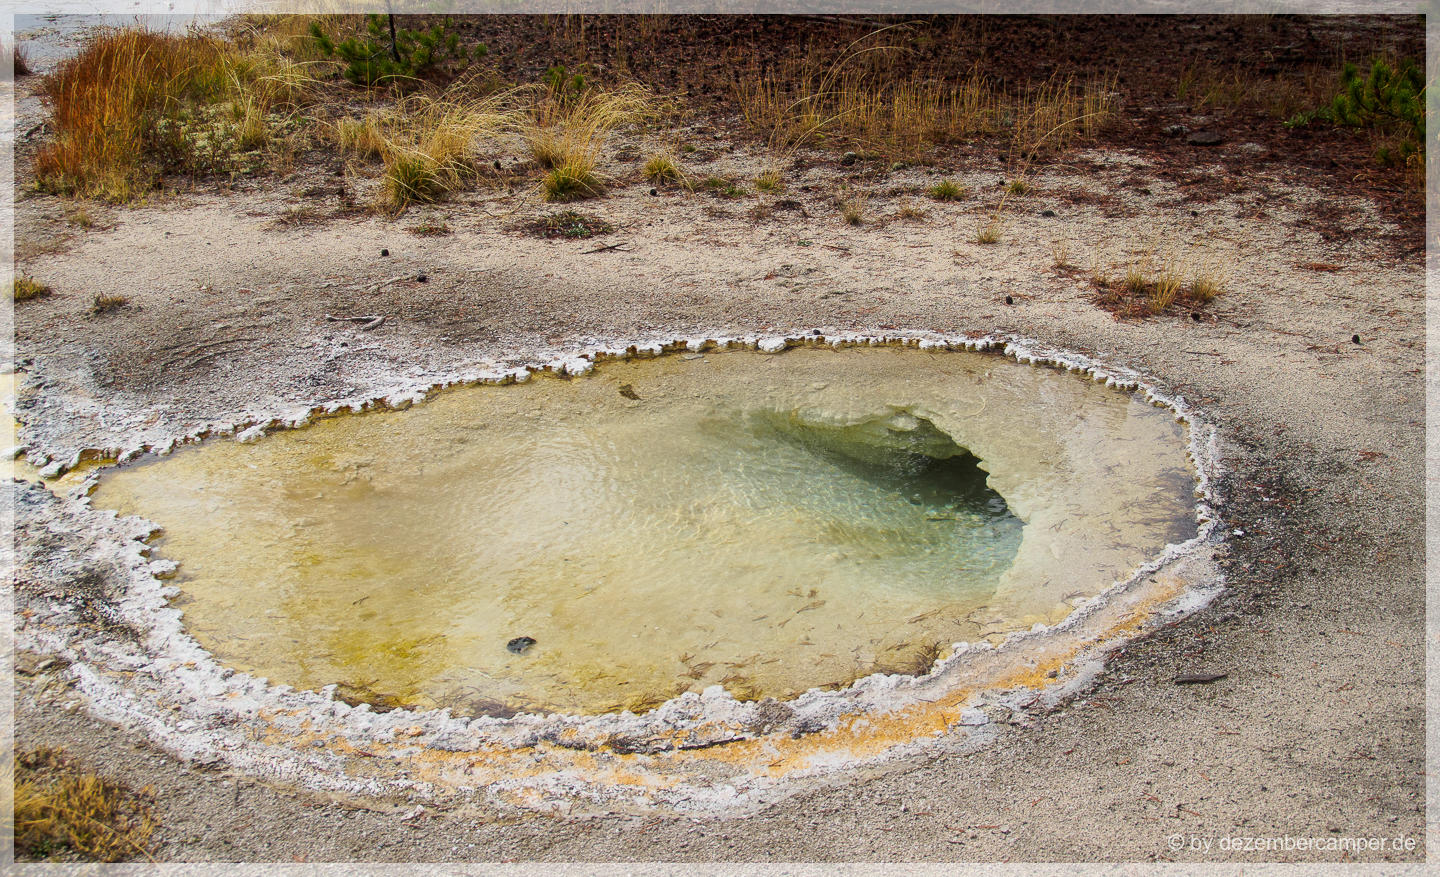 Yellowstone NP - Upper Geysir Basin